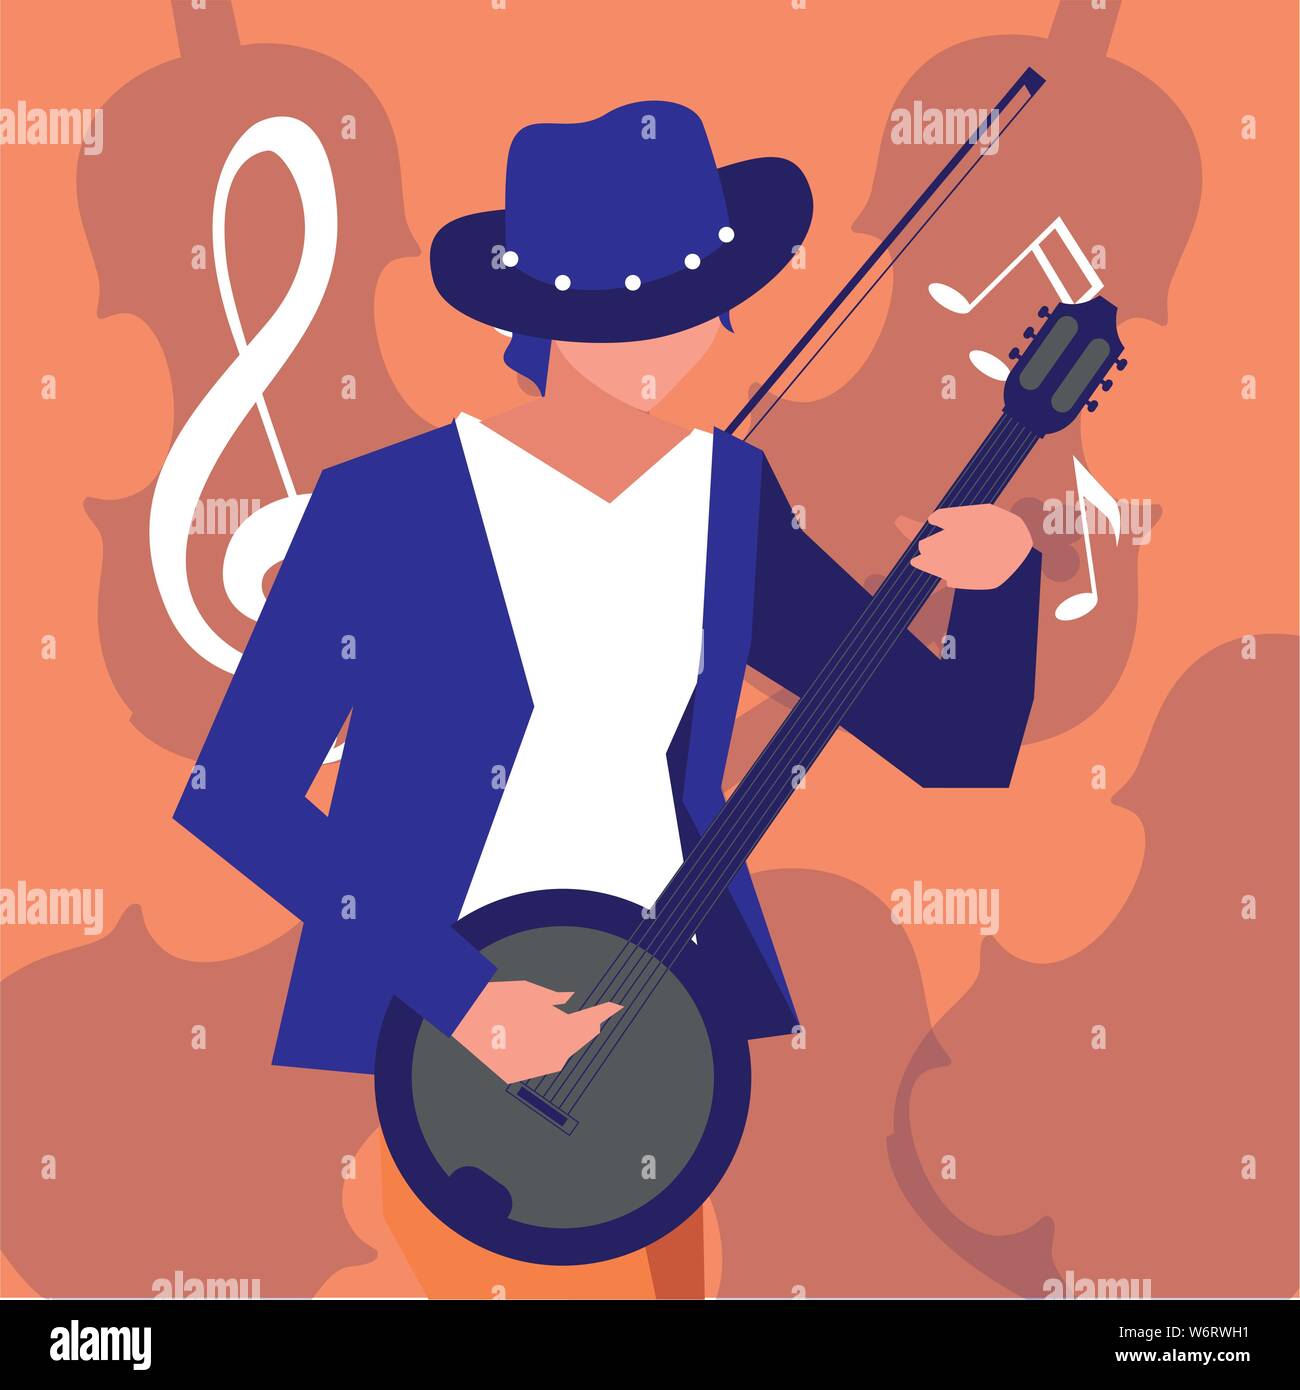 musician man banjo playing instrument vector illustration Stock Vector